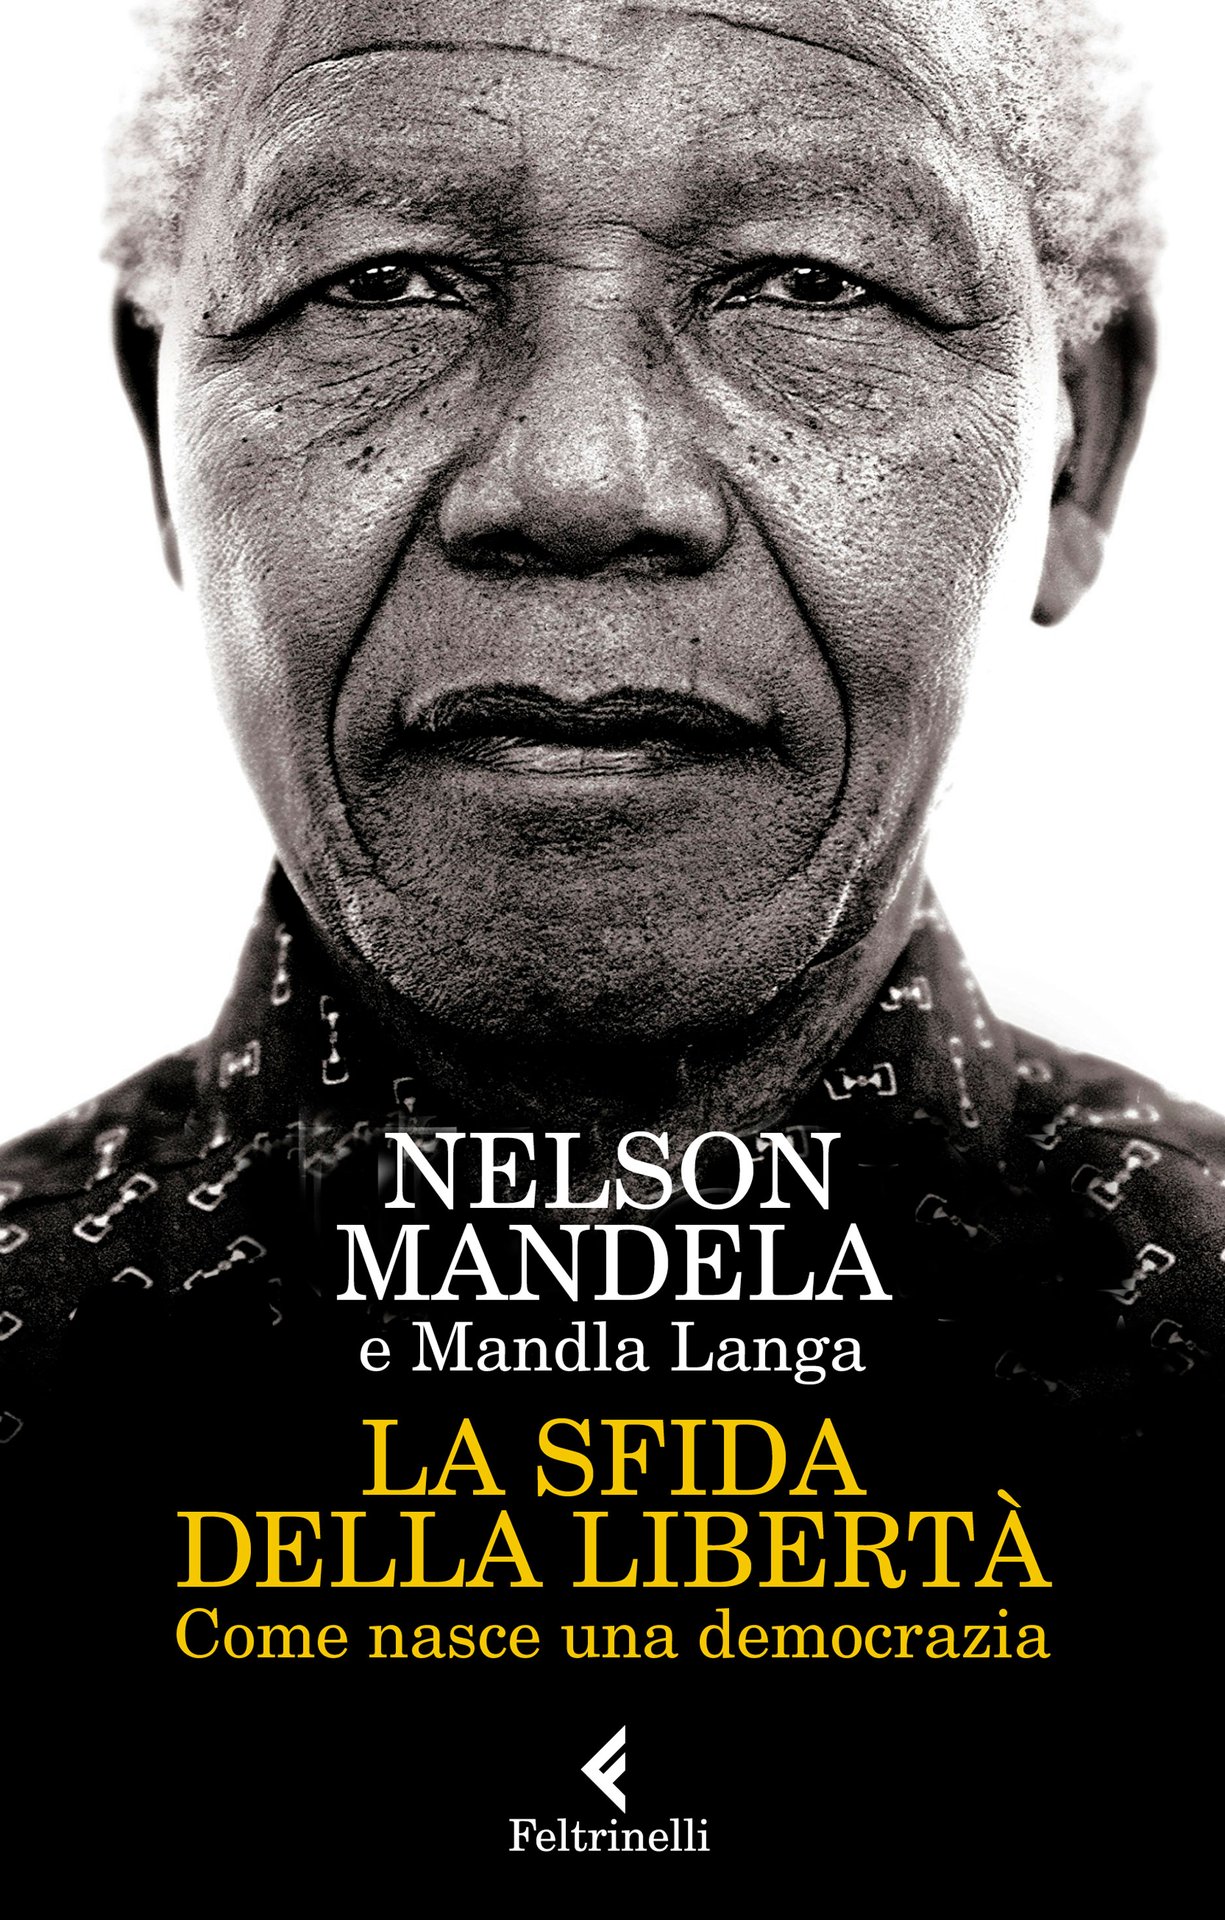 Nelson Mandela "Madiba": a 100 anni dalla nascita